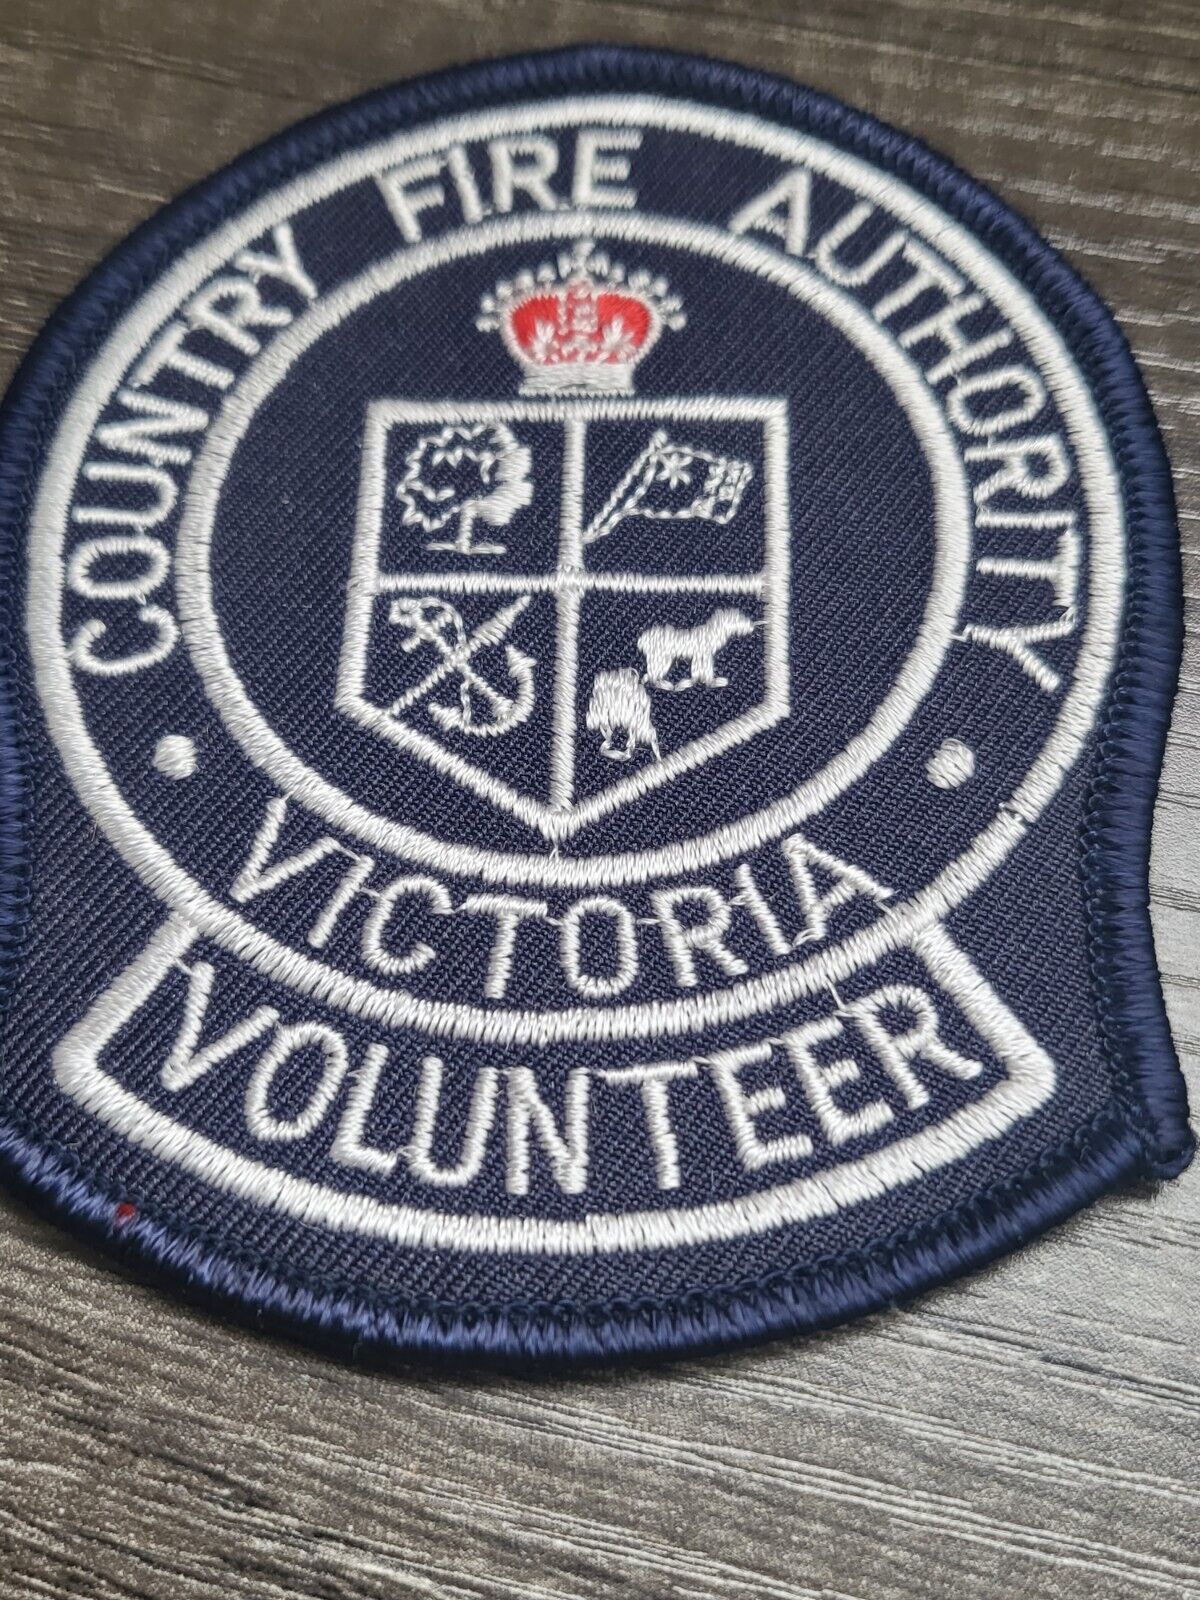 Victoria Volunteer Country Fire Authority Australia 3\